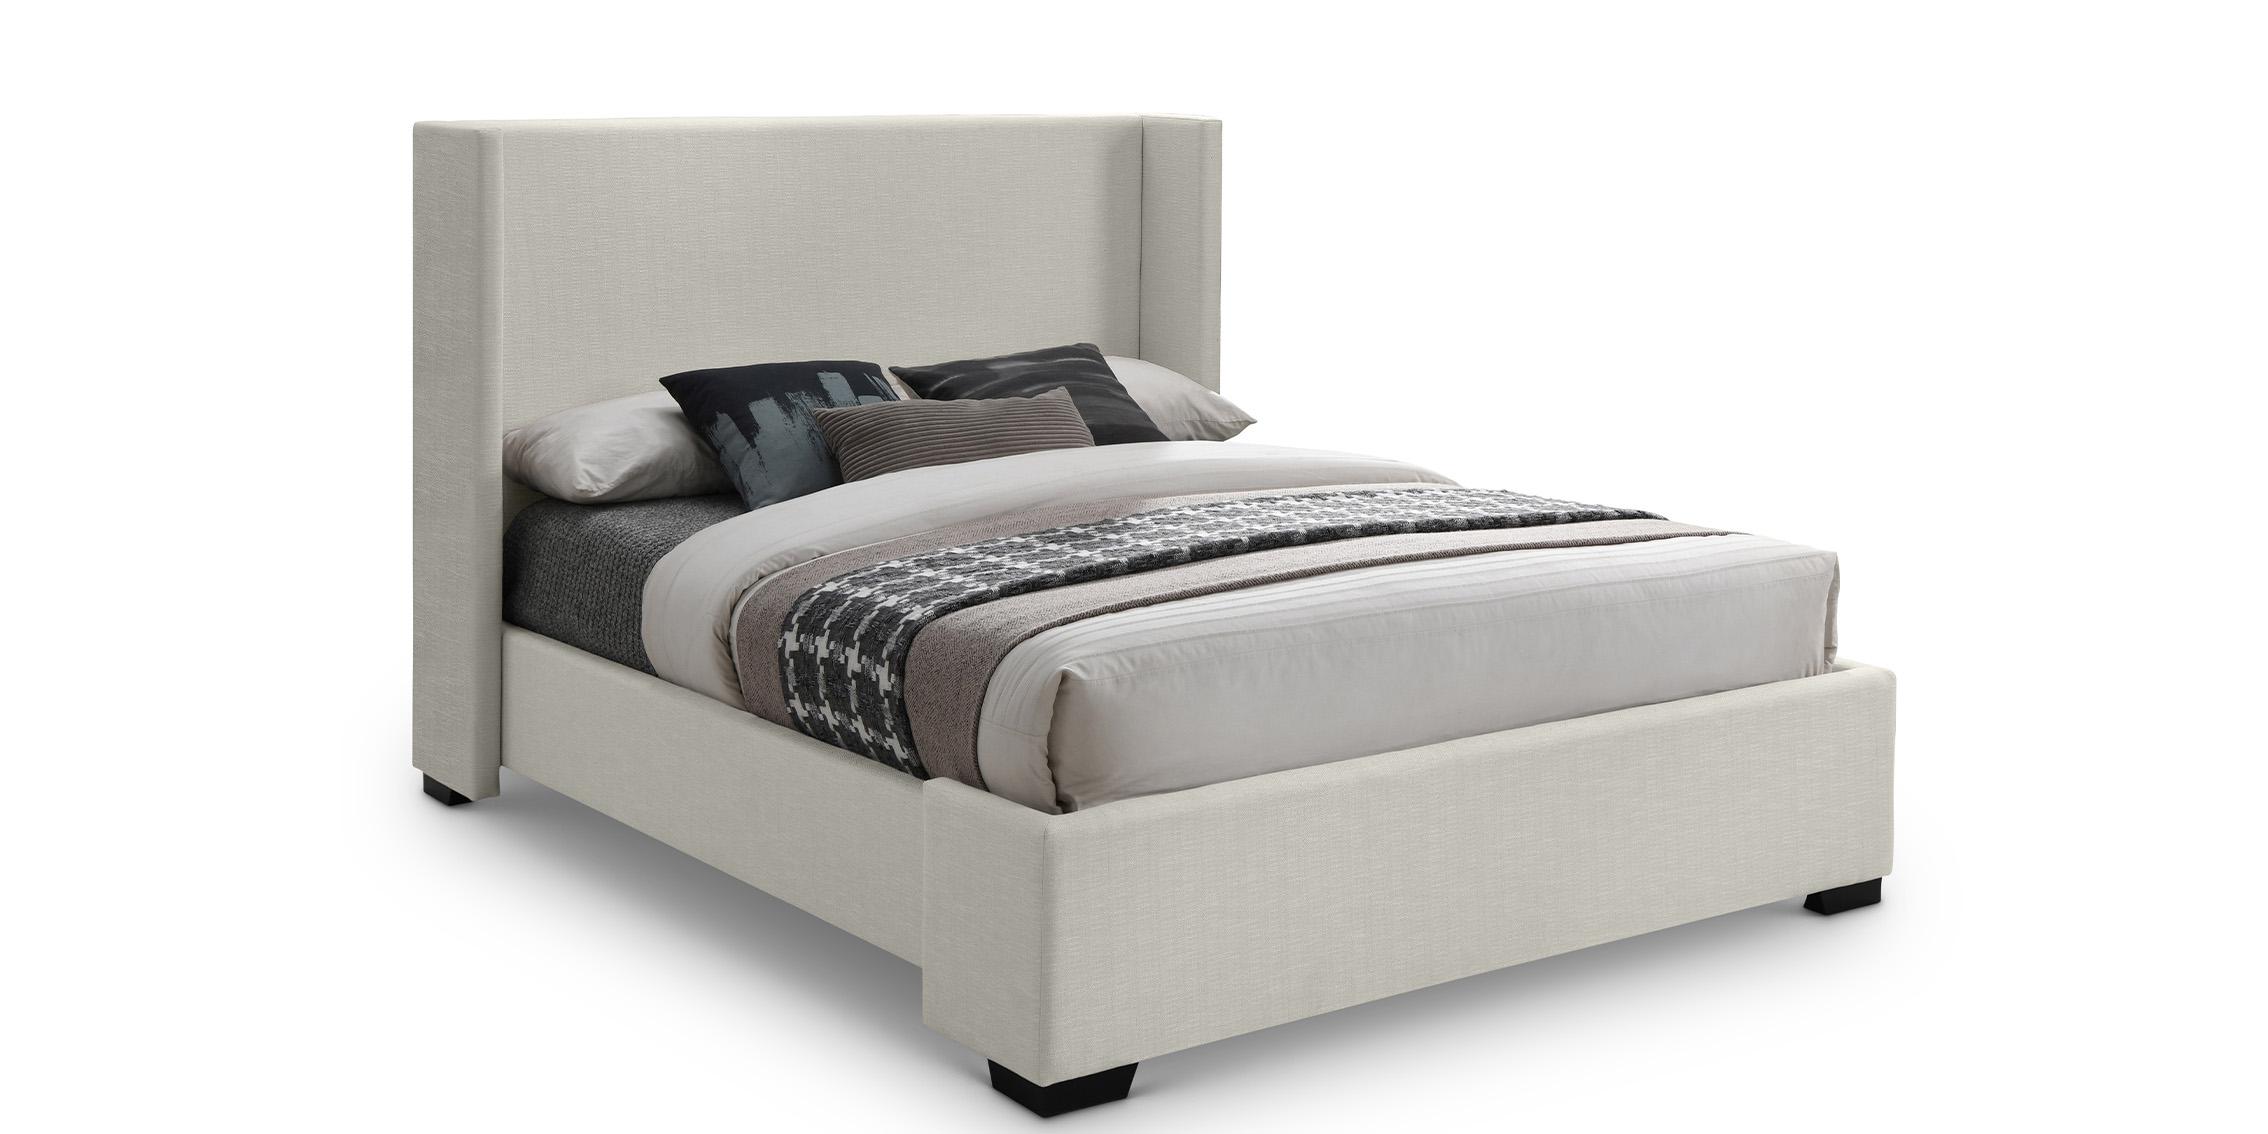 Contemporary, Modern Platform Bed OXFORD OxfordBeige-F OxfordBeige-F in Beige Linen